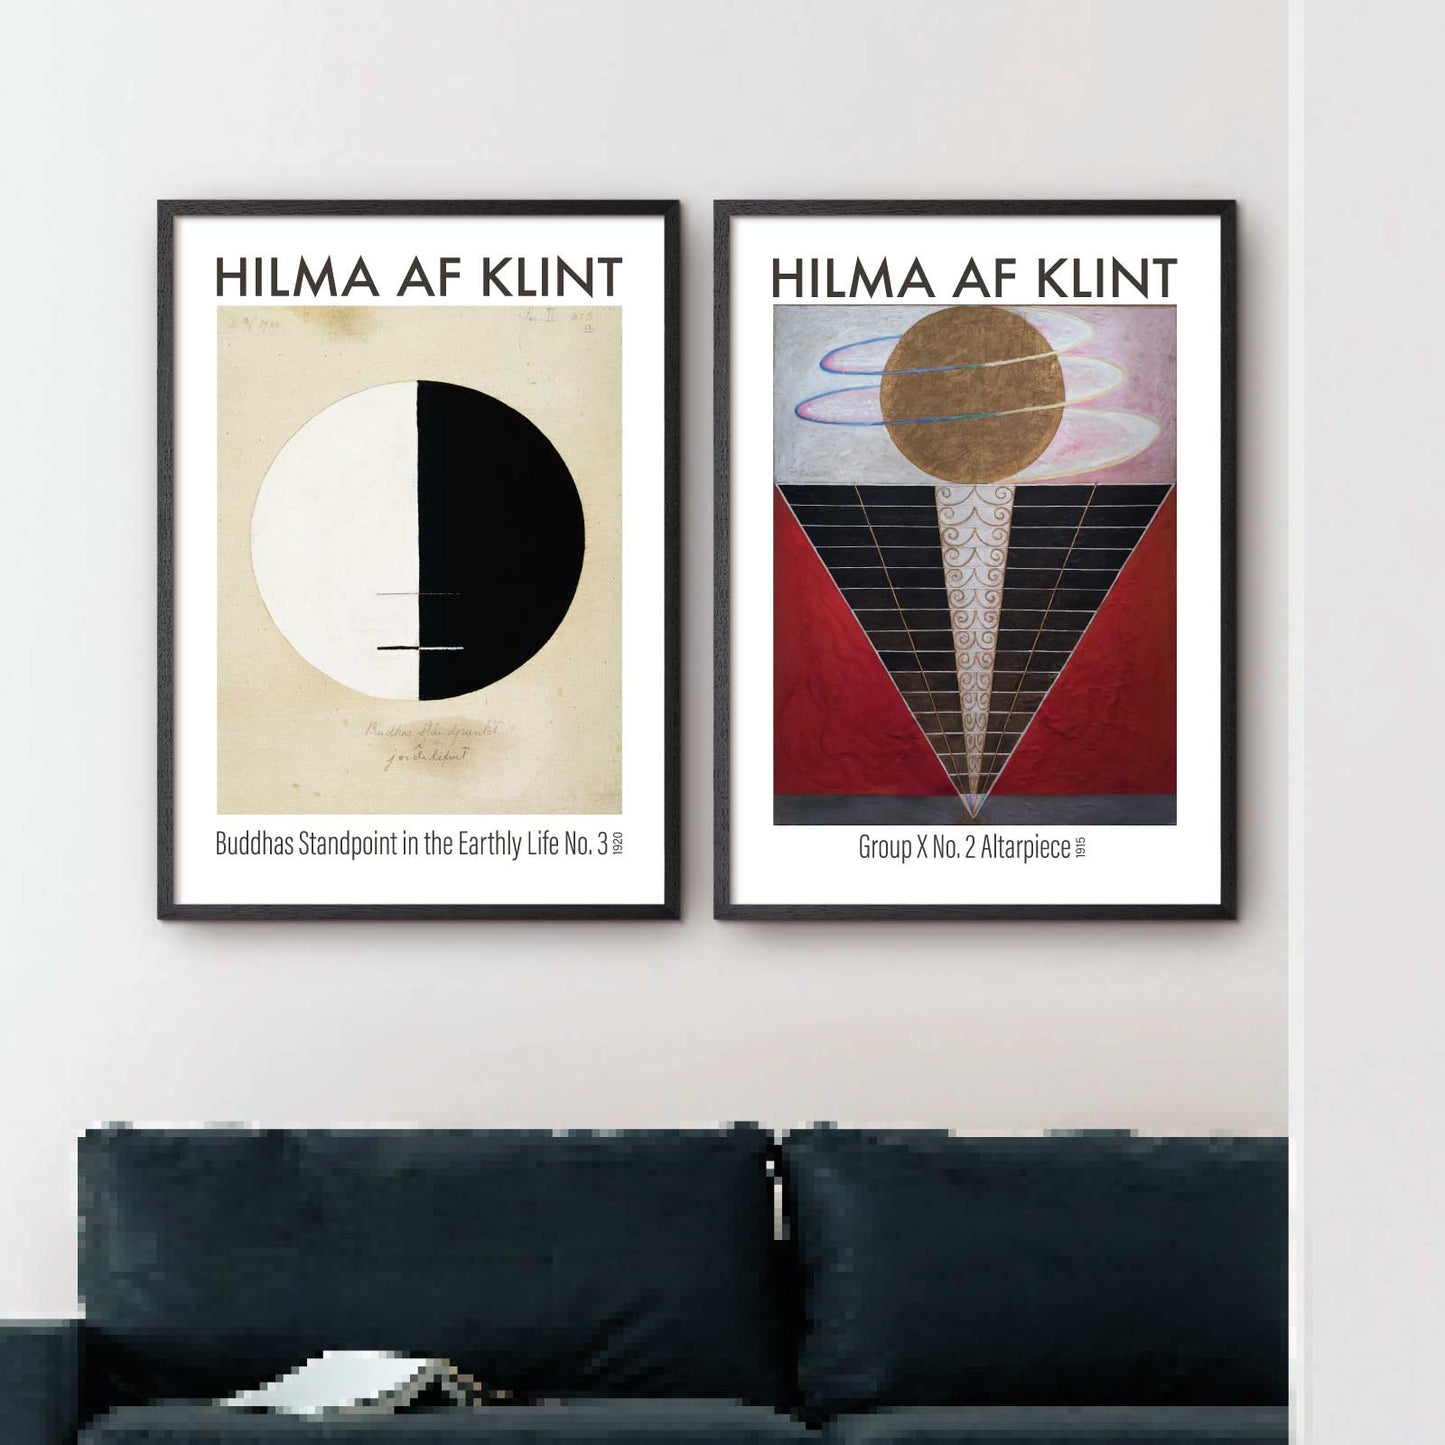 Billedvæg med 2 kunstplakater af Hilma af Klint